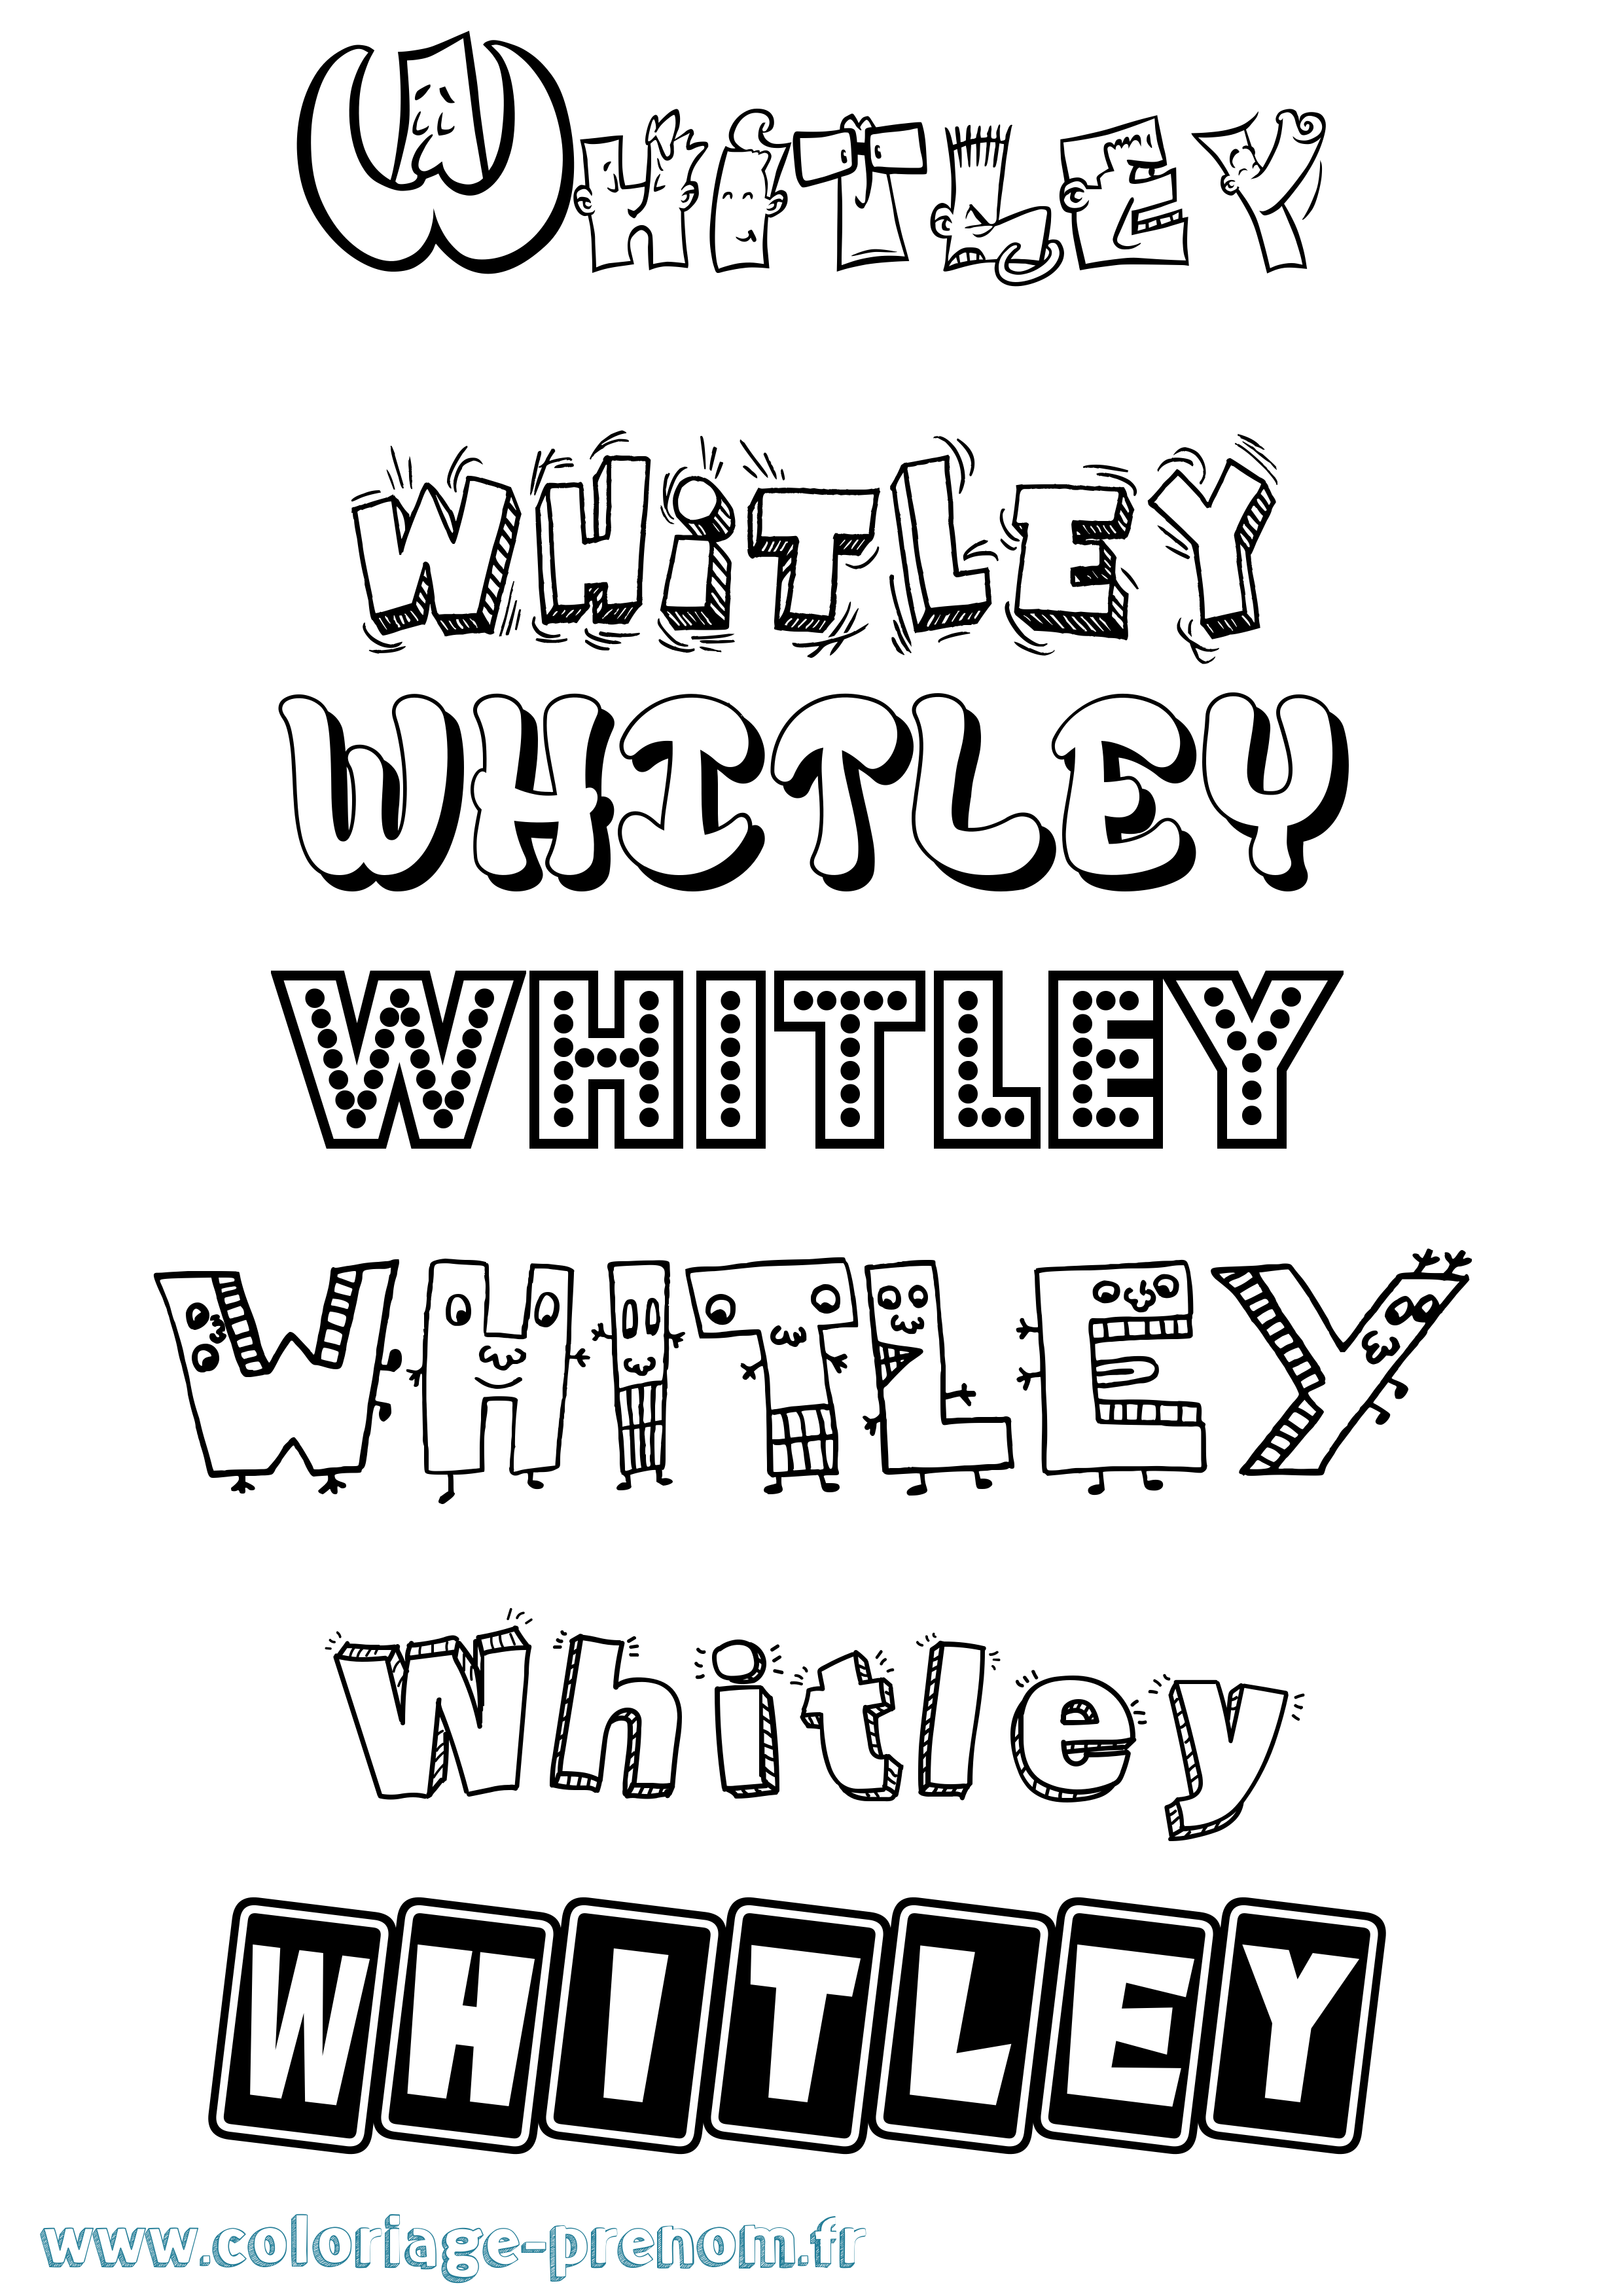 Coloriage prénom Whitley Fun